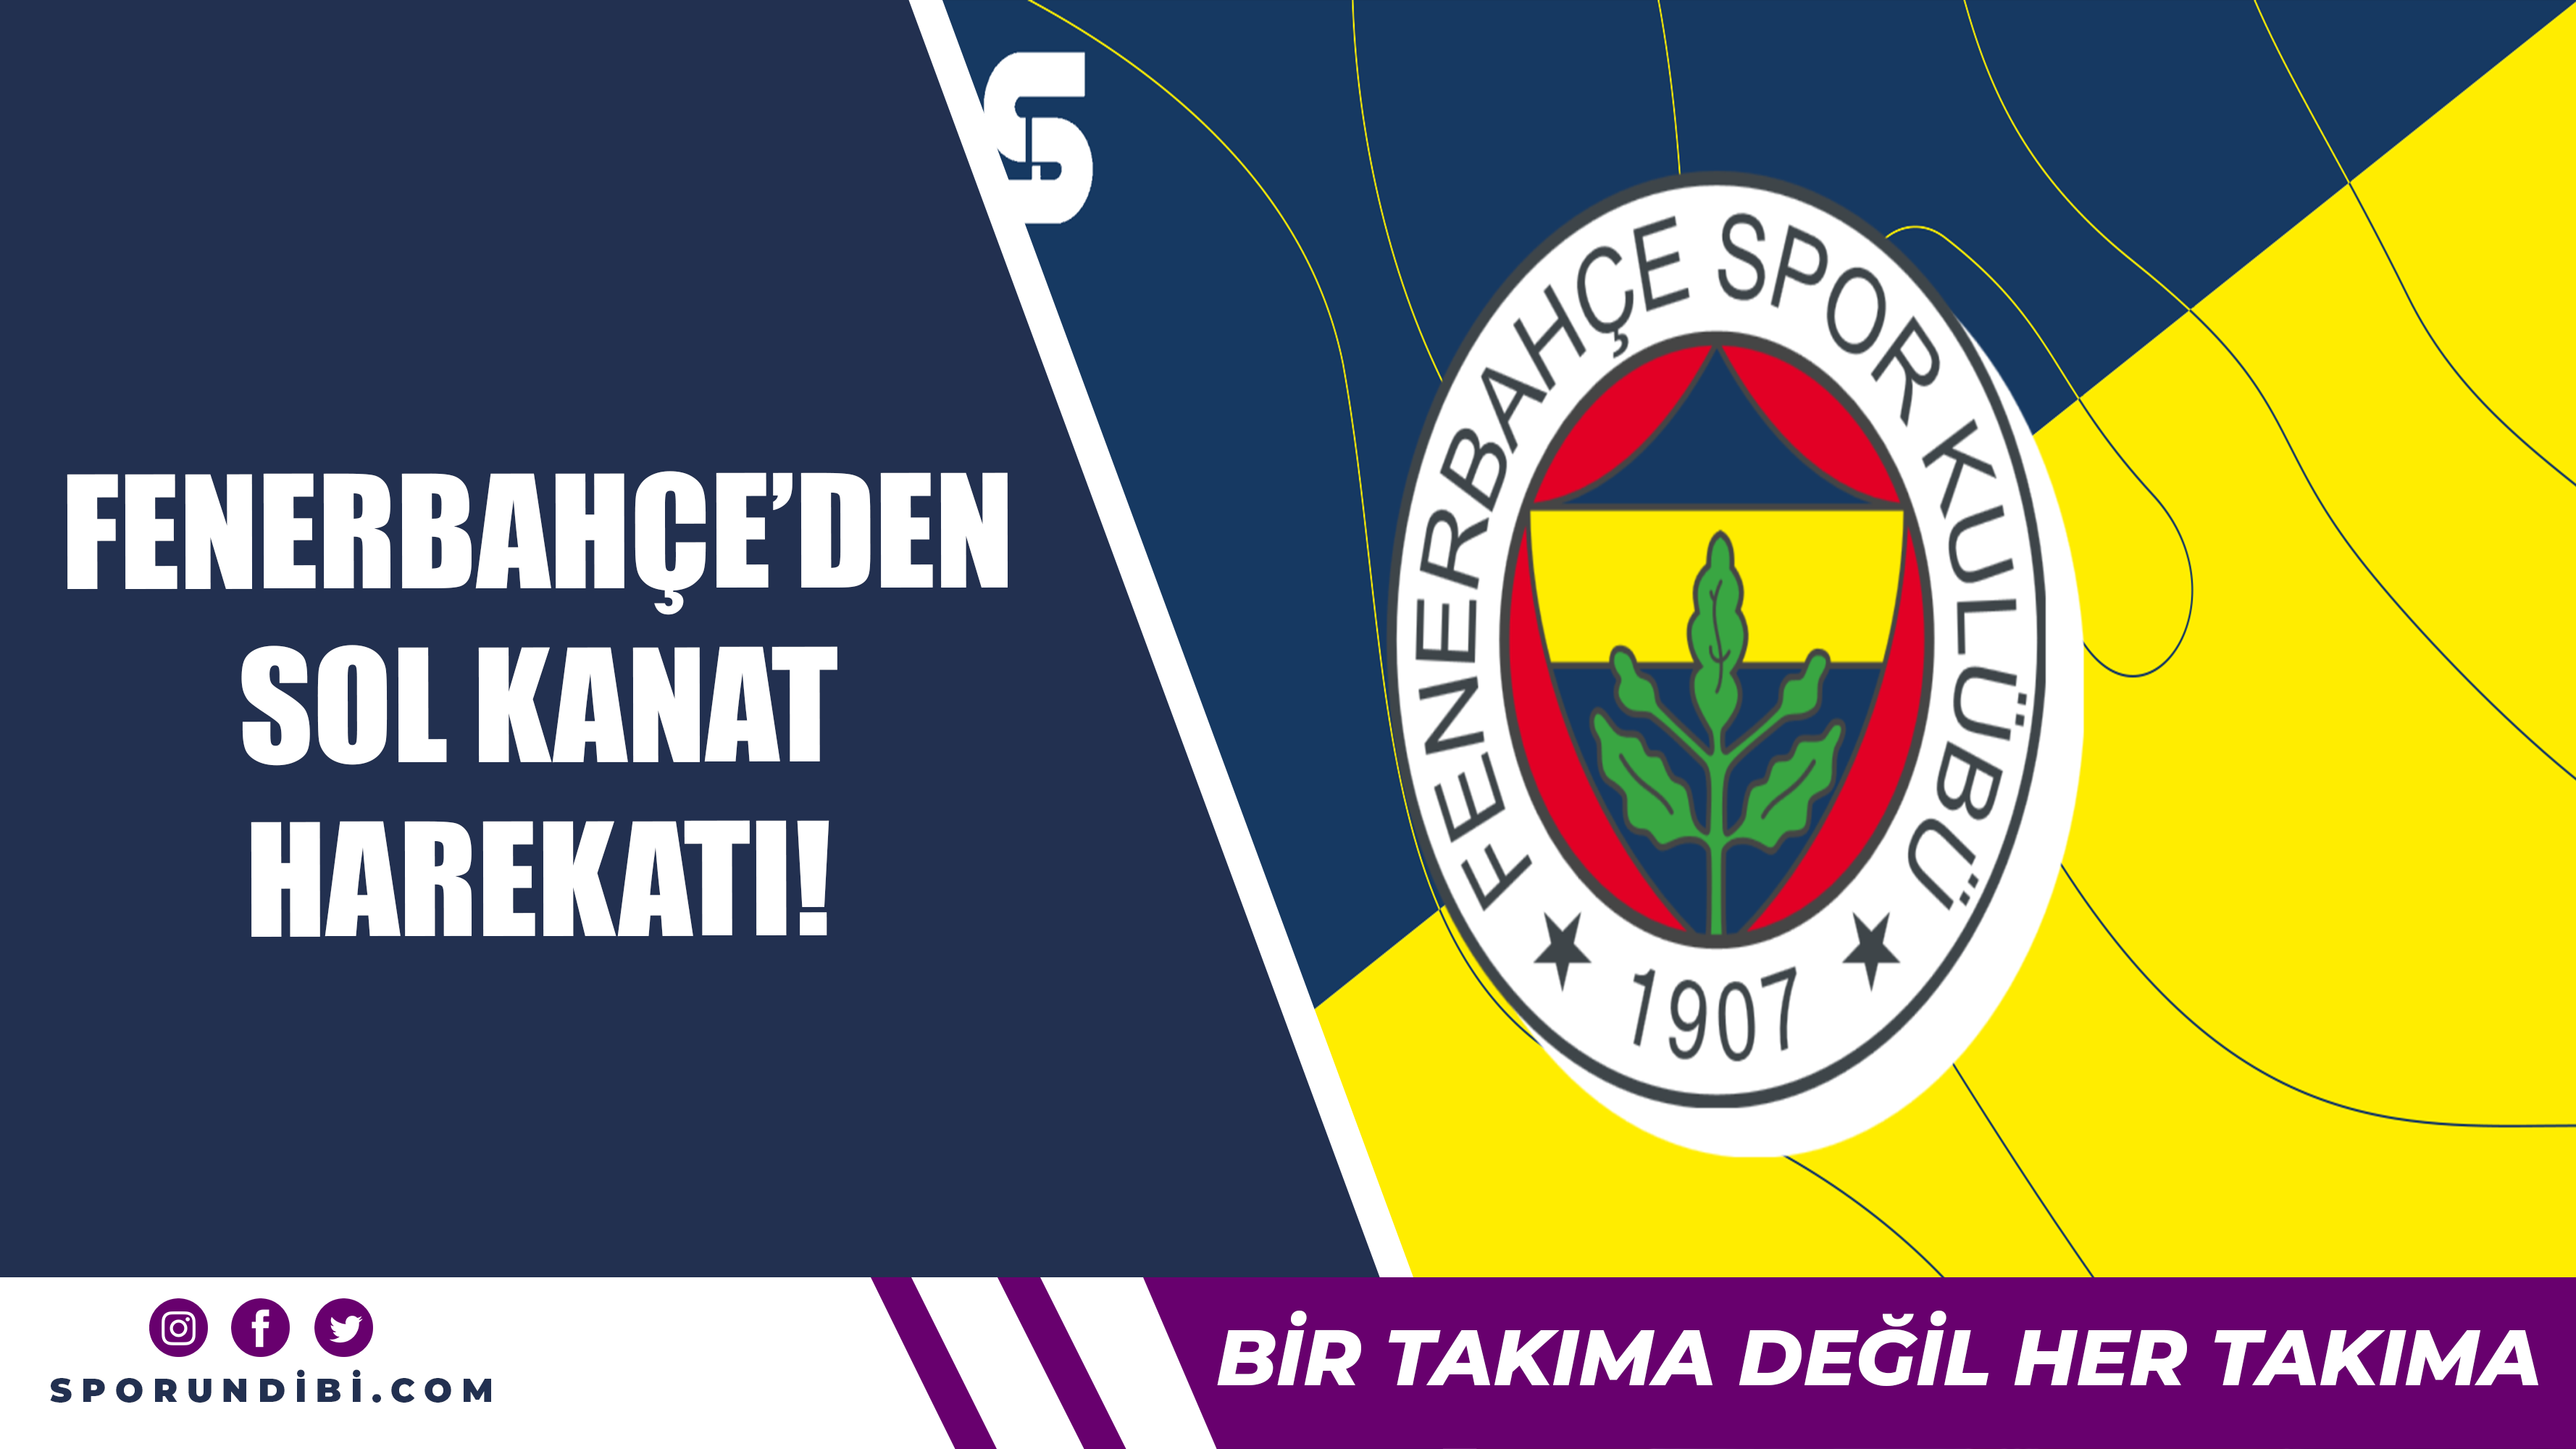 Fenerbahçe'den sol kanat harekatı!